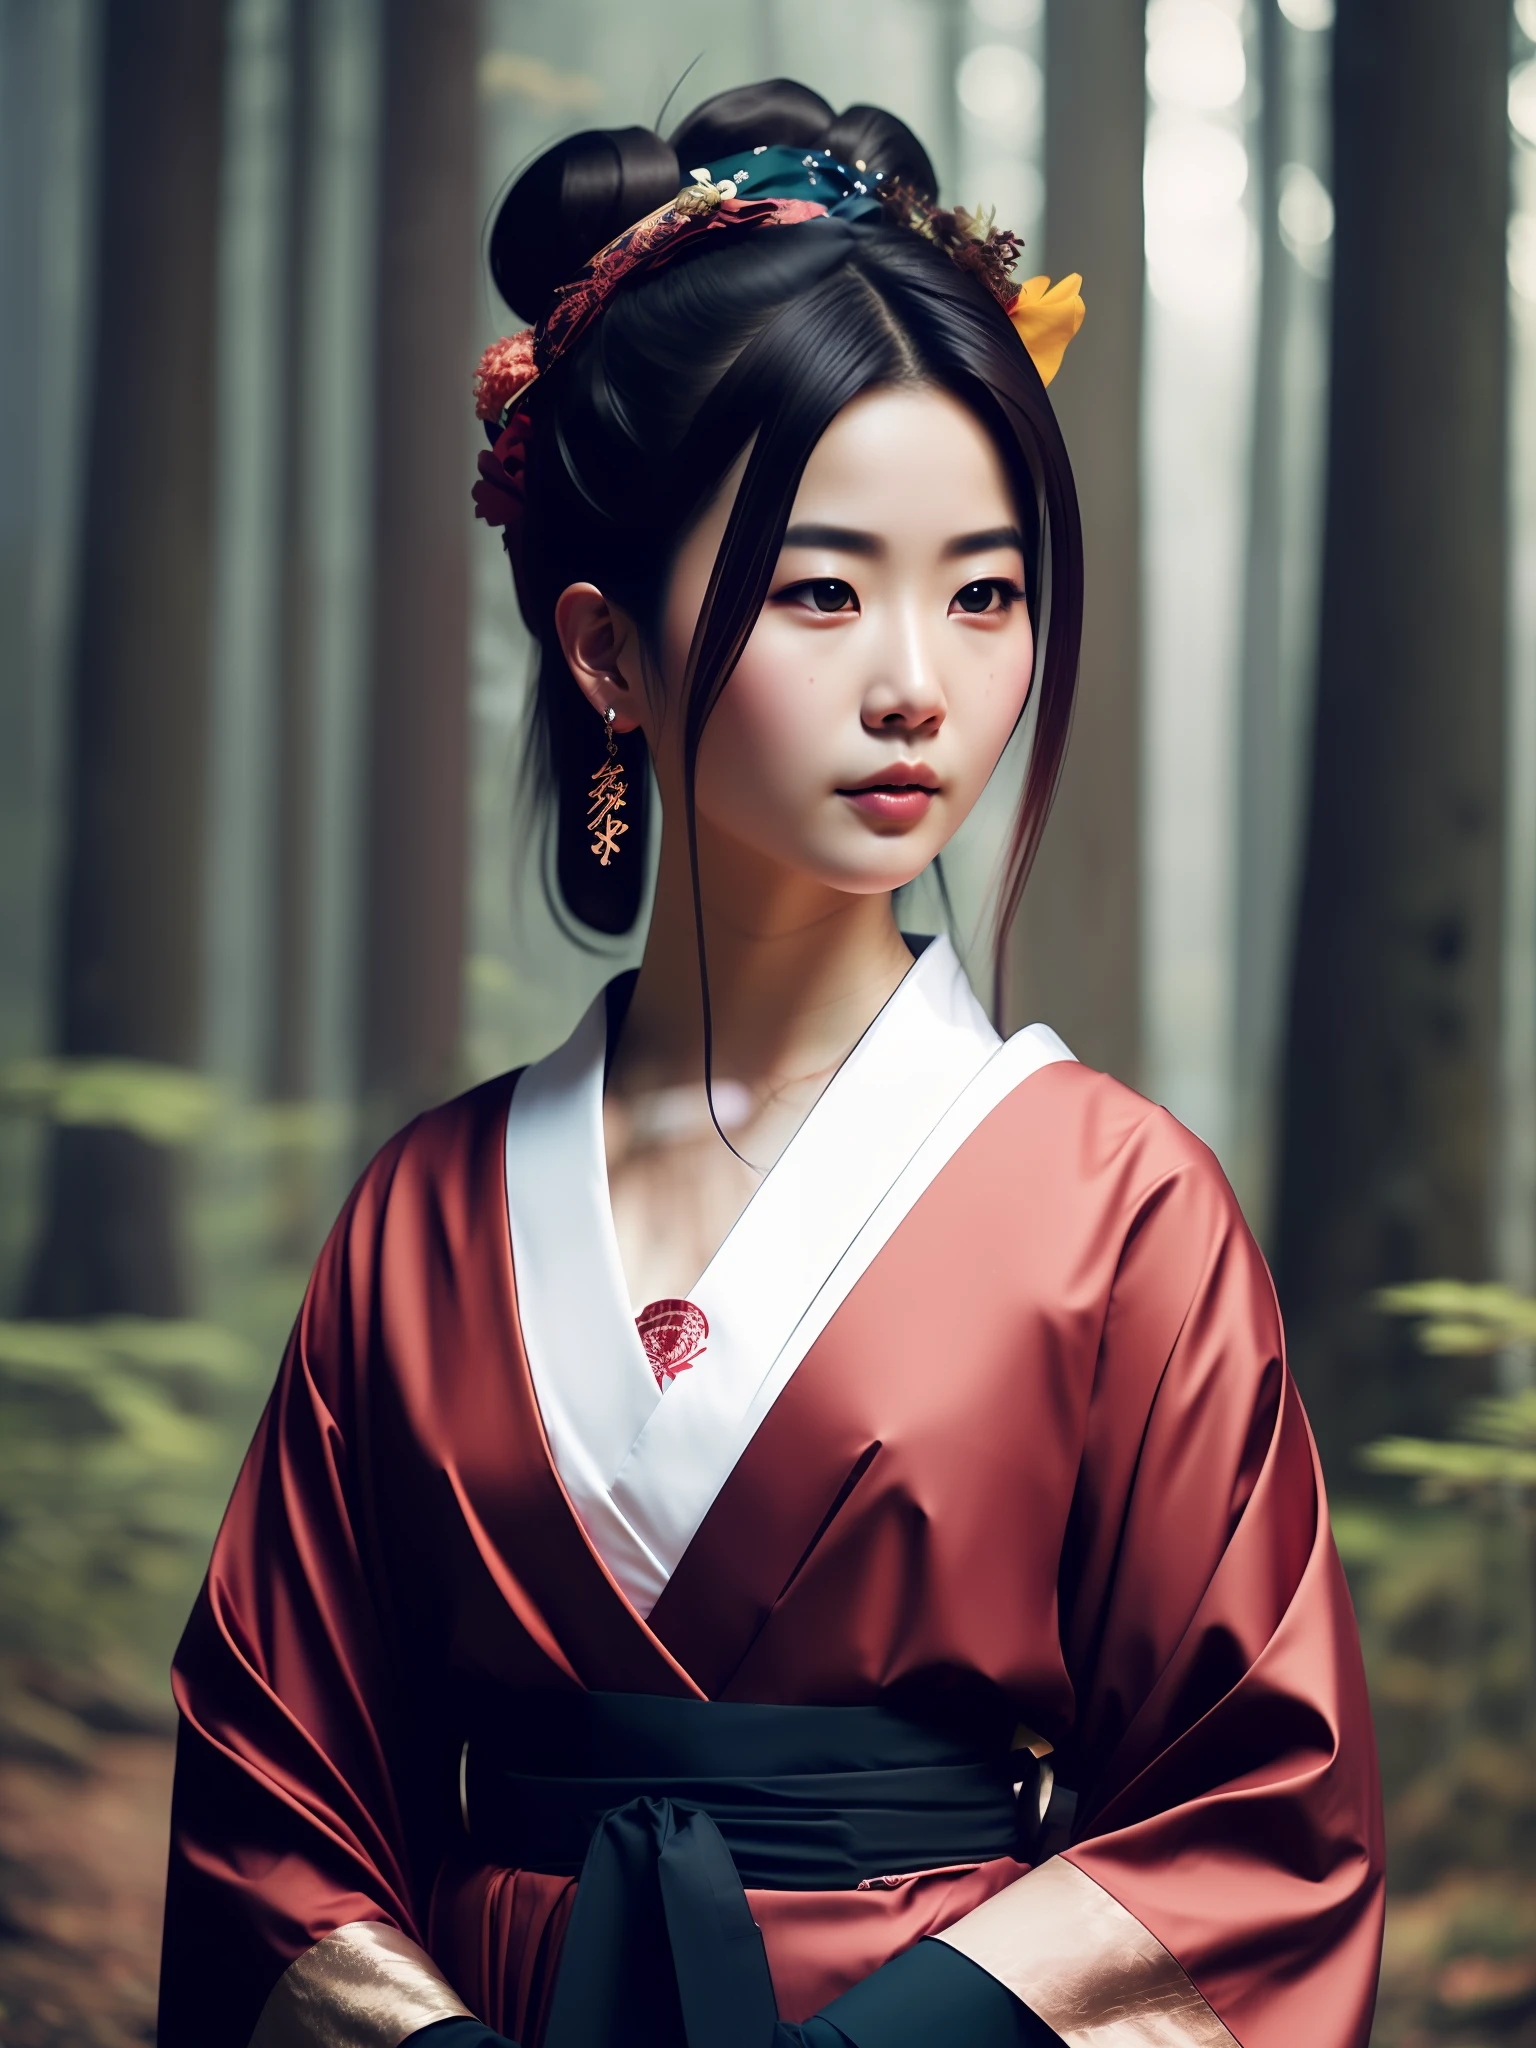 他媽的_科幻_v2, 一個年輕非常美麗的日本 gueisha 的肖像, 在煙霧繚繞的森林前, 色彩豐富的衣服和日本傘, 特寫, 神秘的姿勢和態度. 他媽的_电影_v2